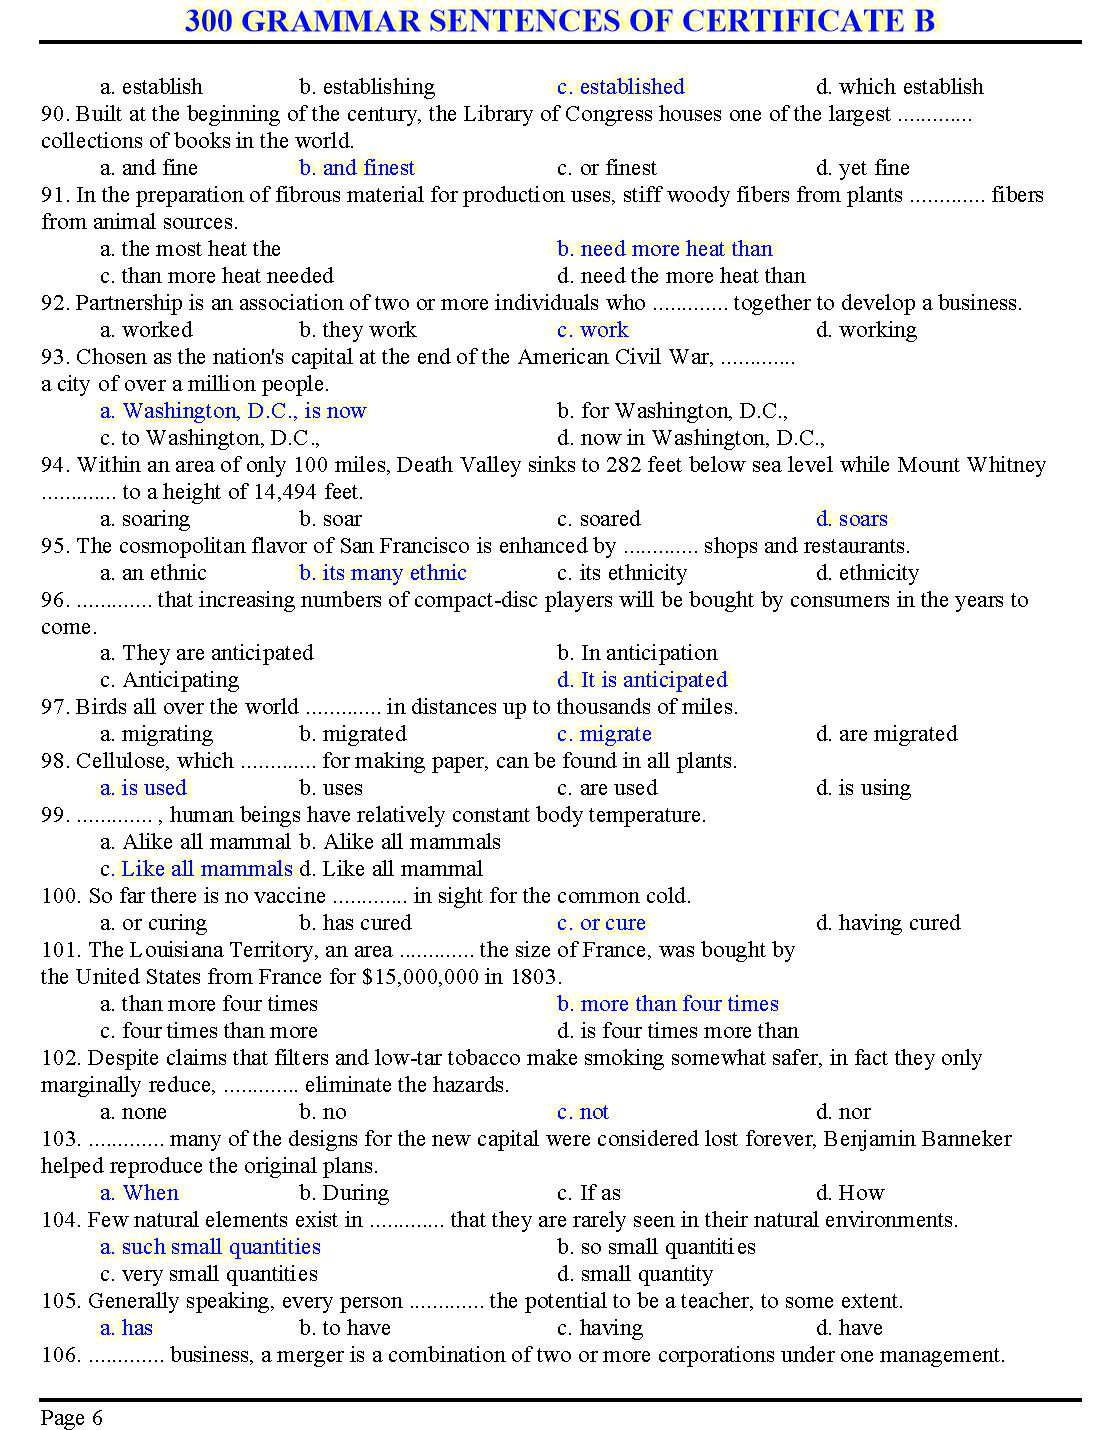 300 grammar sentences of certificate B trang 6